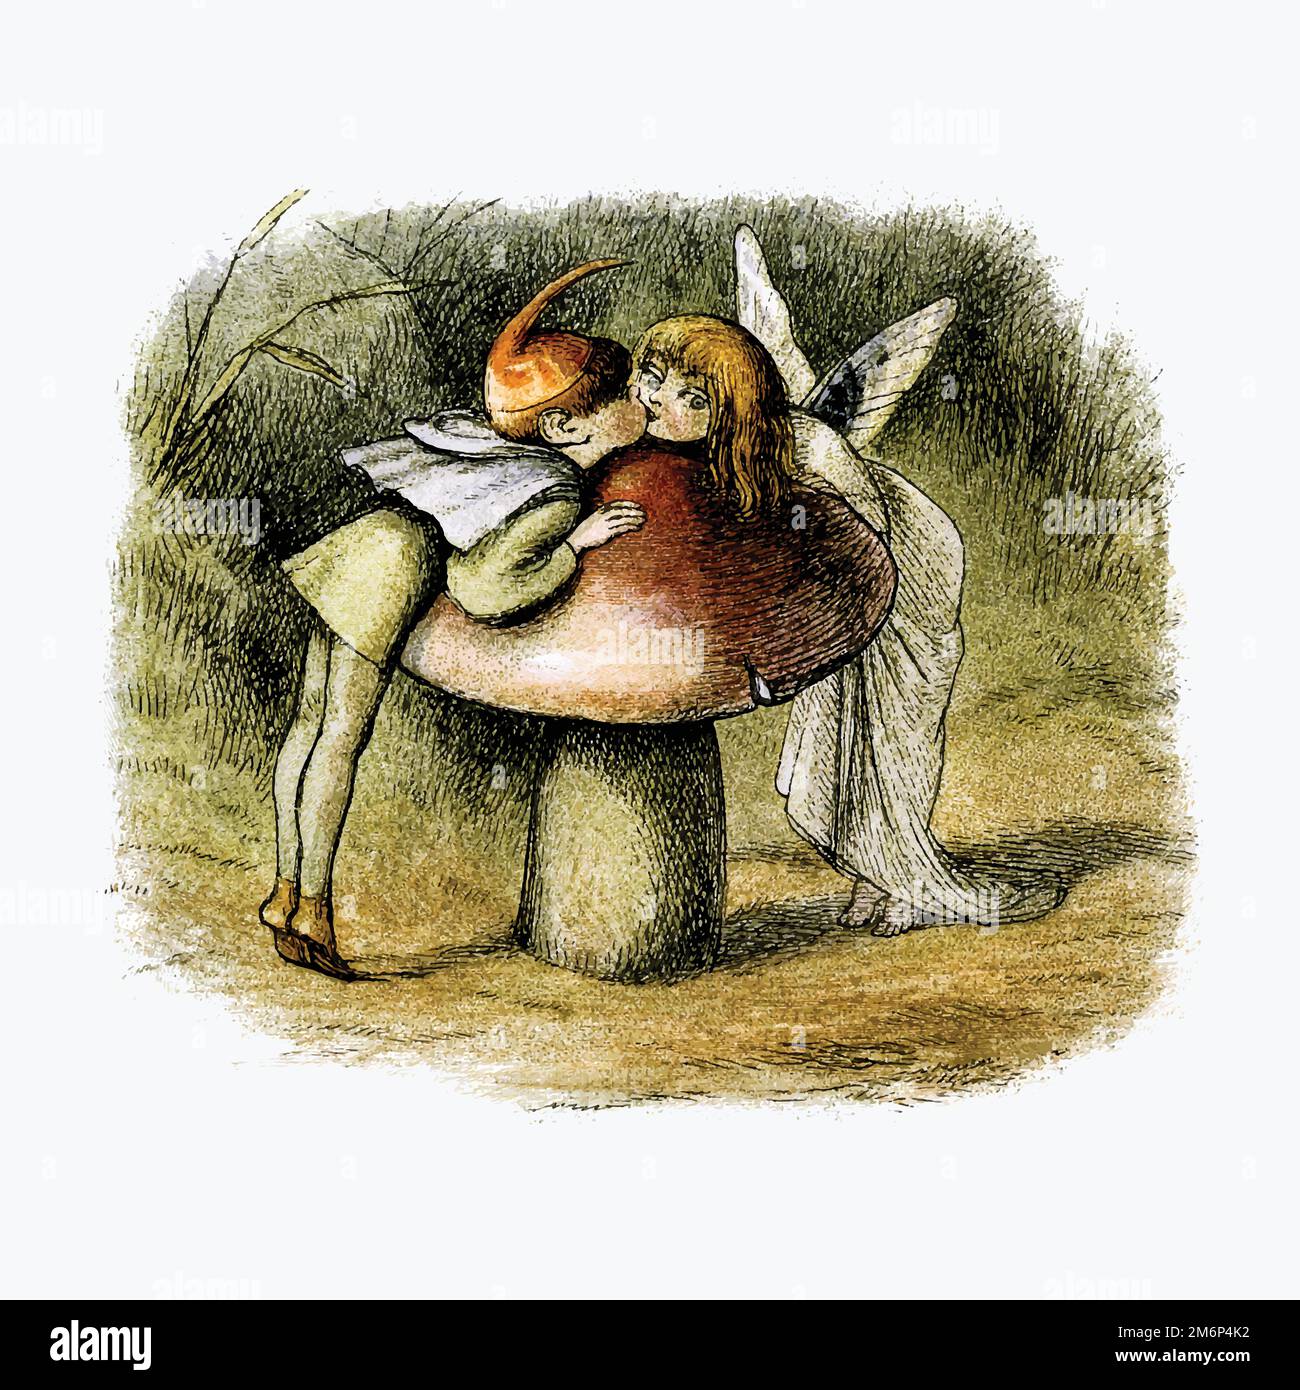 Les anges embrassent un vecteur d'illustration de champignon Illustration de Vecteur